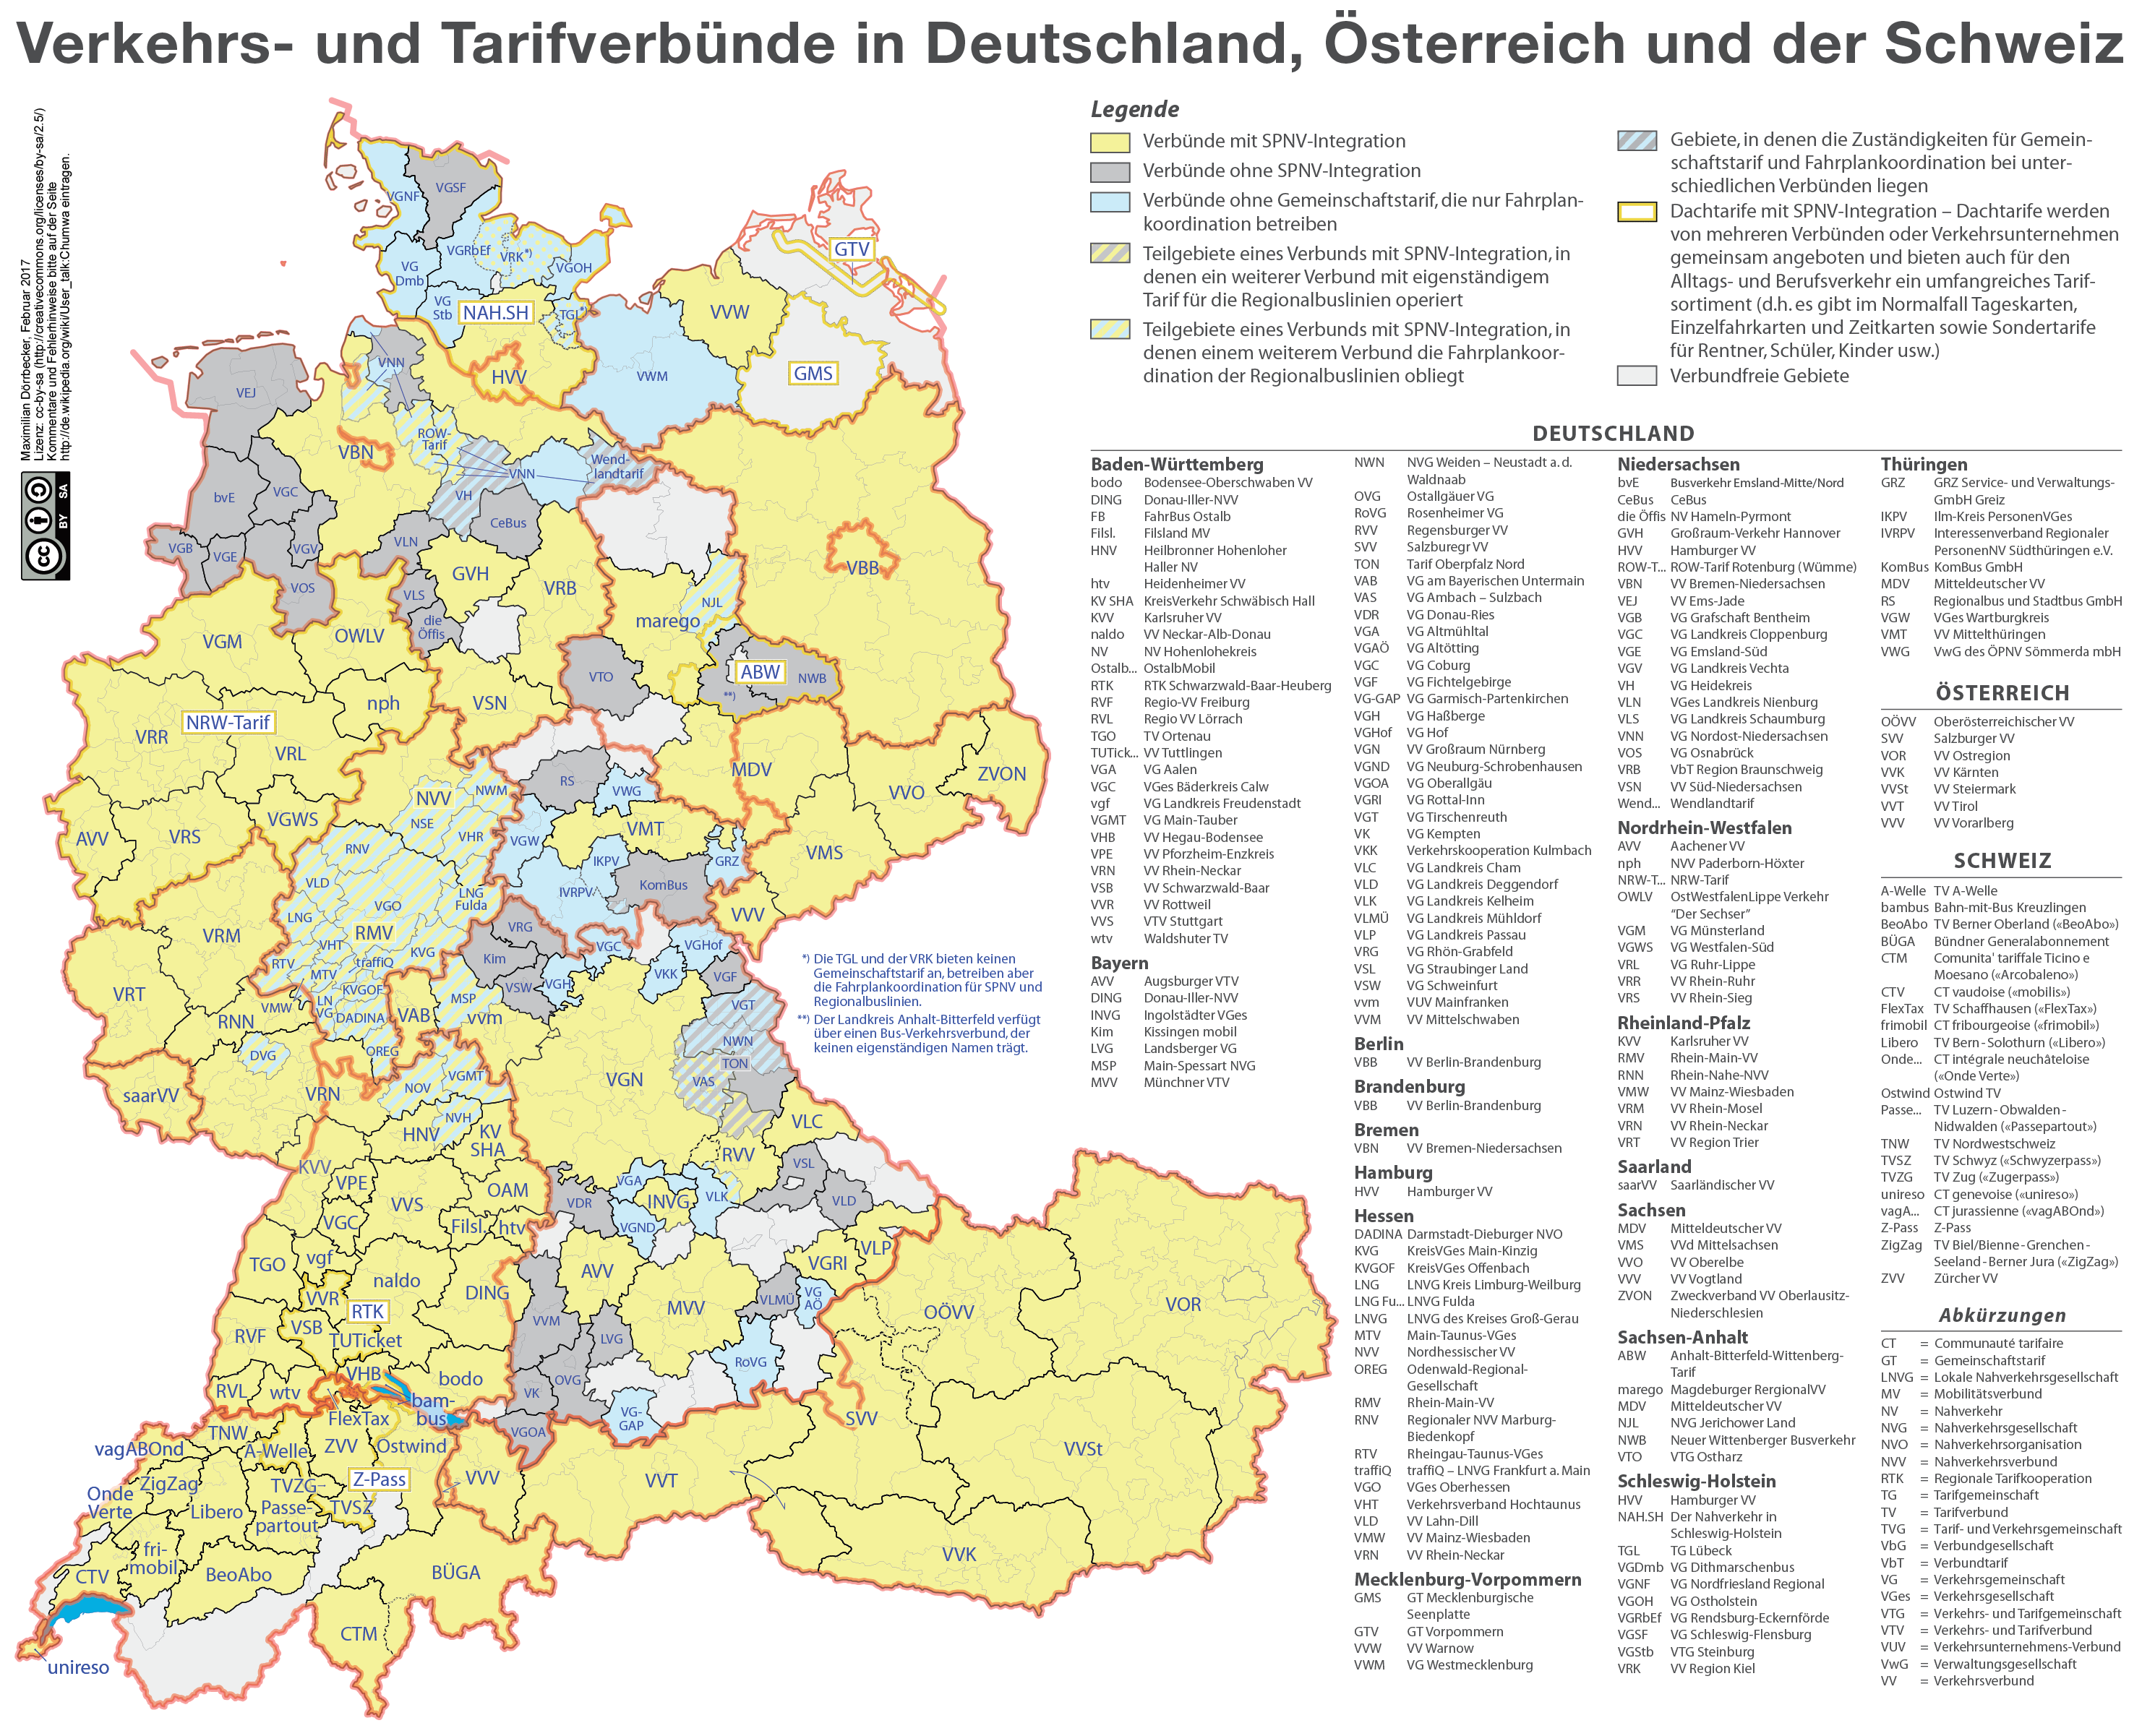 karte_der_verkehrsverbunde_und_tarifverbunde_in_deutschland_osterreich_und_der_schweiz.png